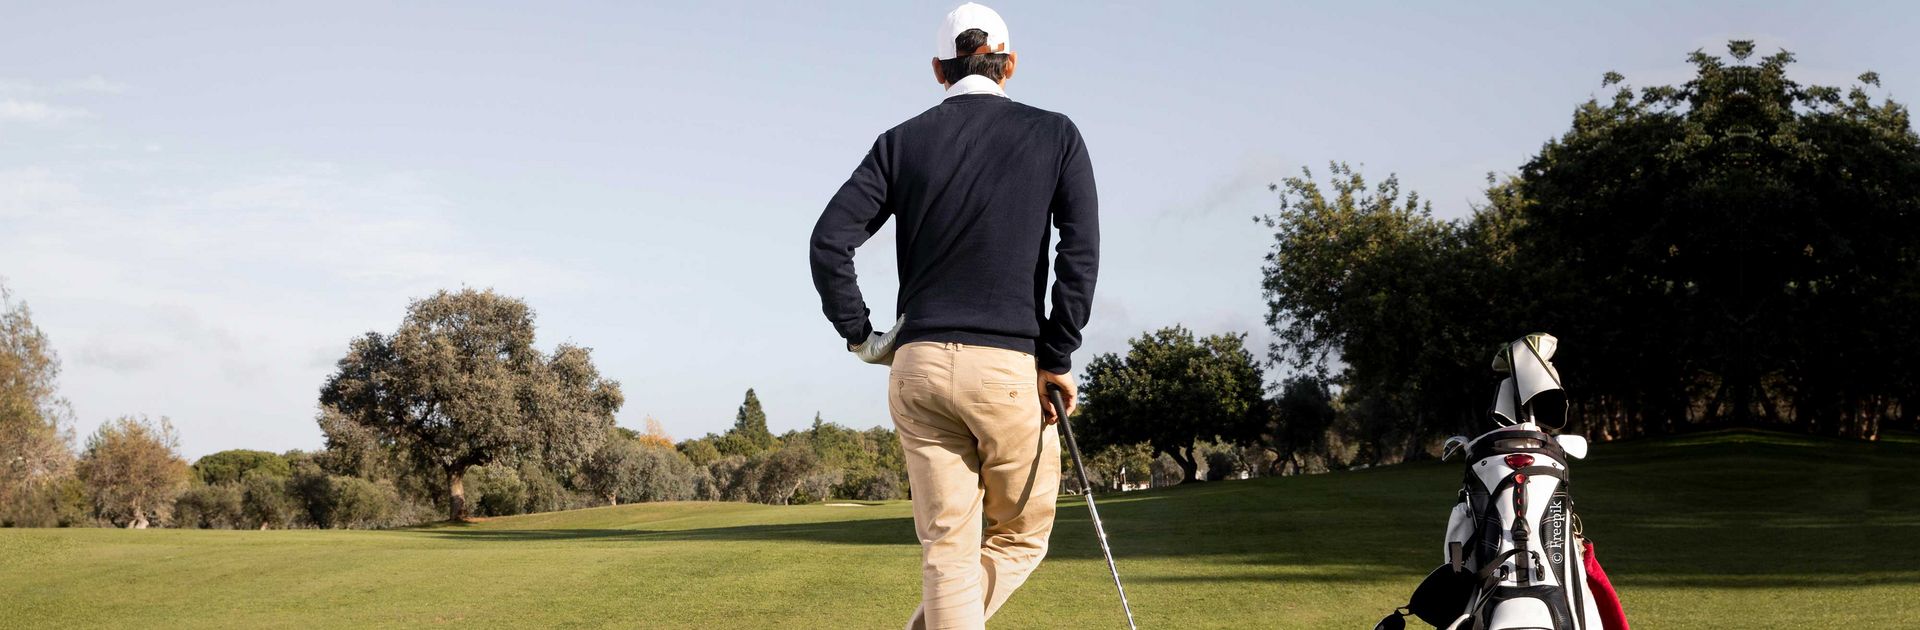 Golfer steht entspannt mit dem Rücken zum Fotografen und Blickt in die Ferne. Neben ihm steht das Golfbag.